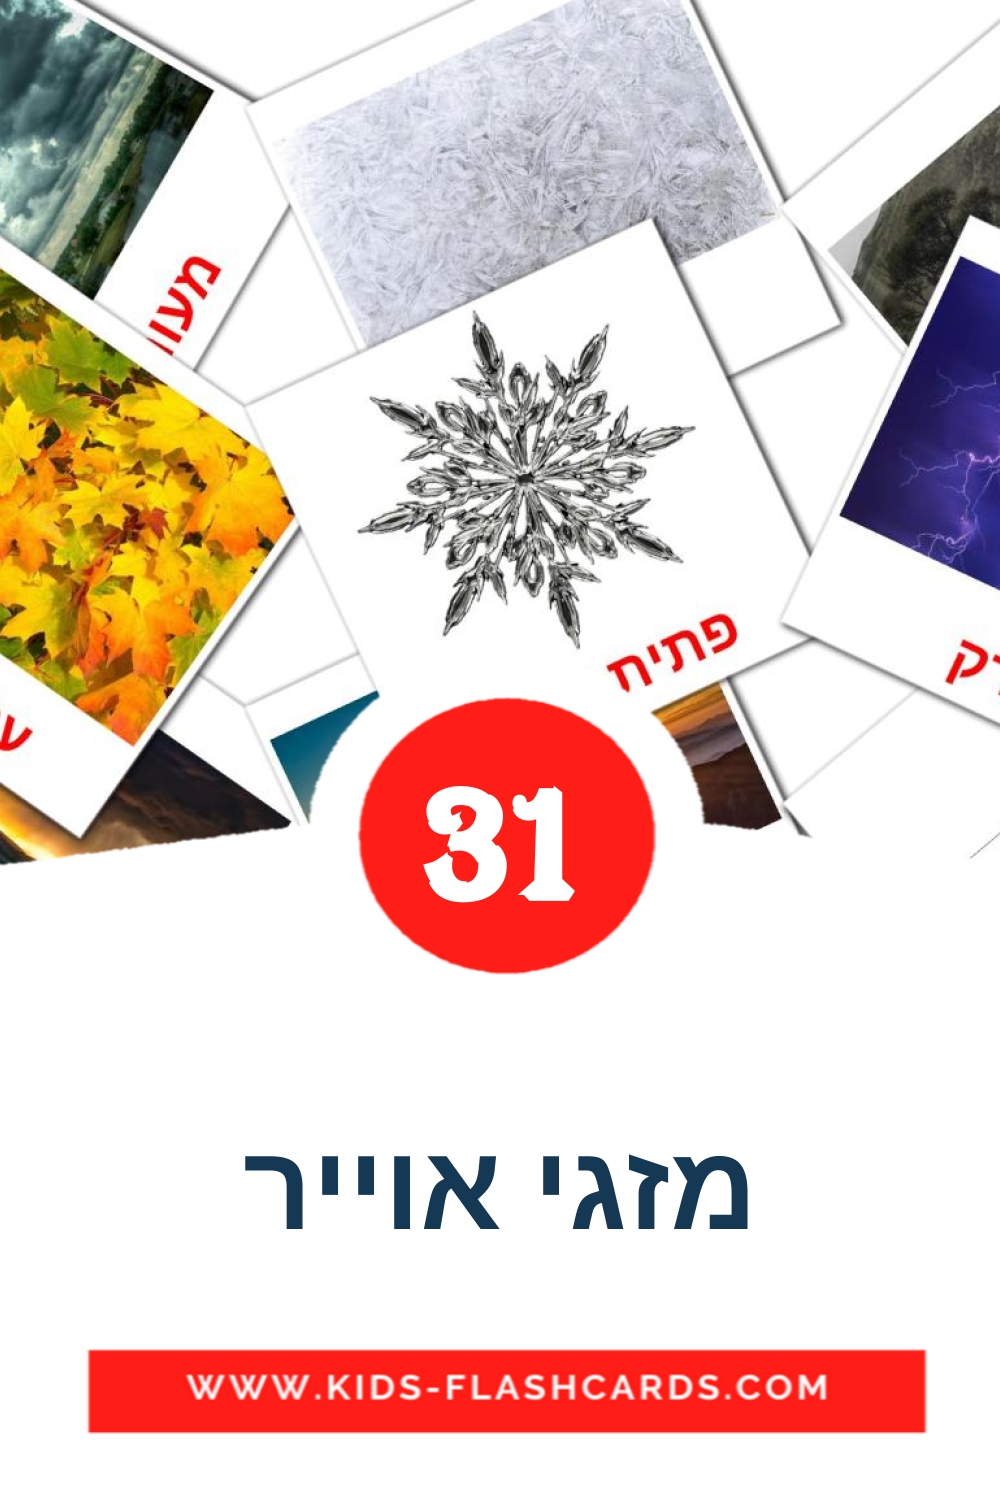 31 carte illustrate di מזגי אוייר per la scuola materna in ebraico